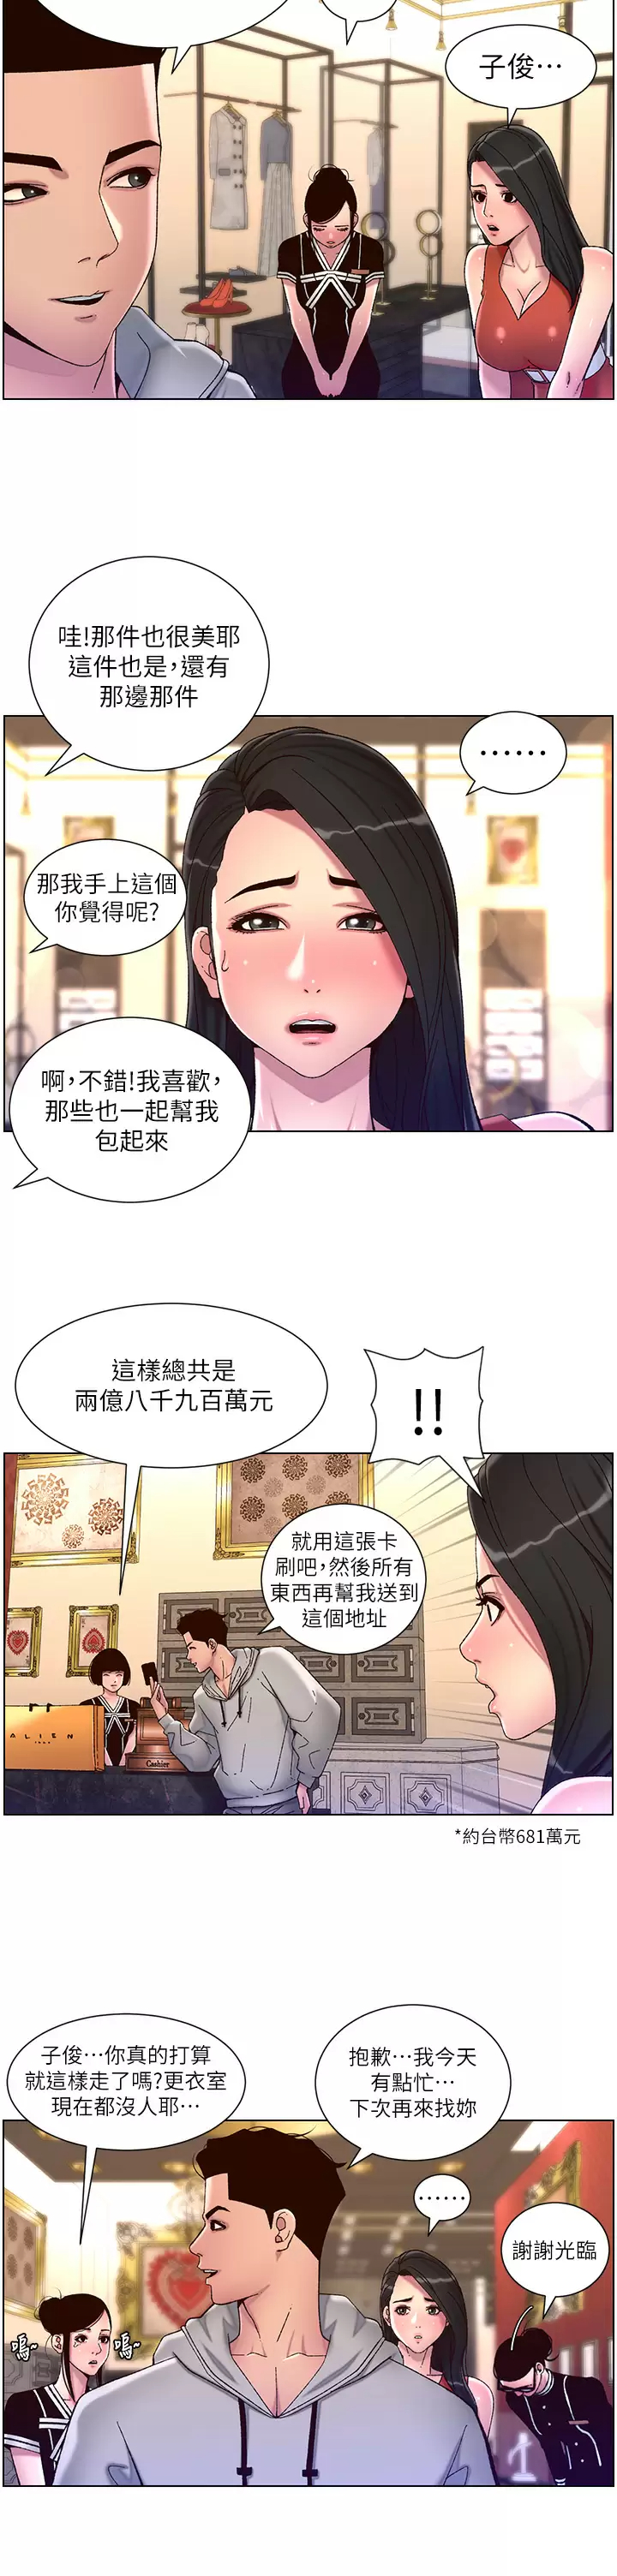 韩国污漫画 帝王App 第56话 在老公面前被硬上 2